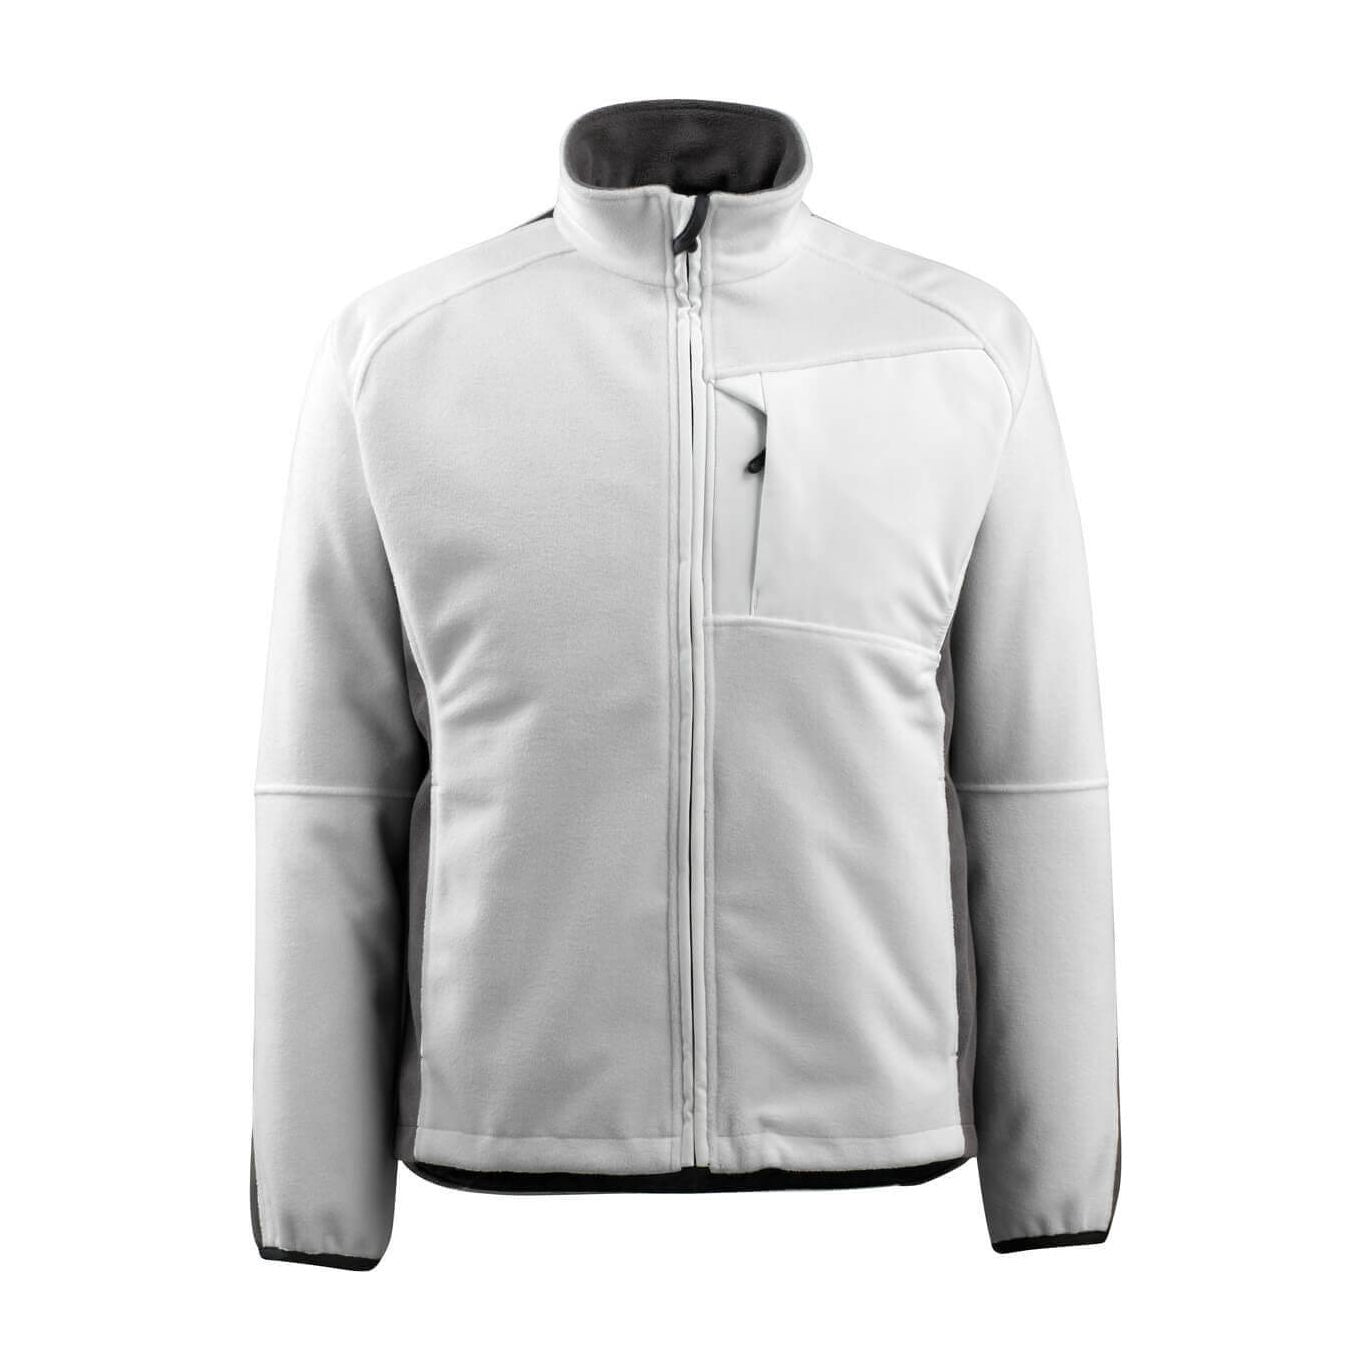 Mascot Marburg Work Fleece Jacket 15603-259 Front #colour_white-dark-anthracite-grey